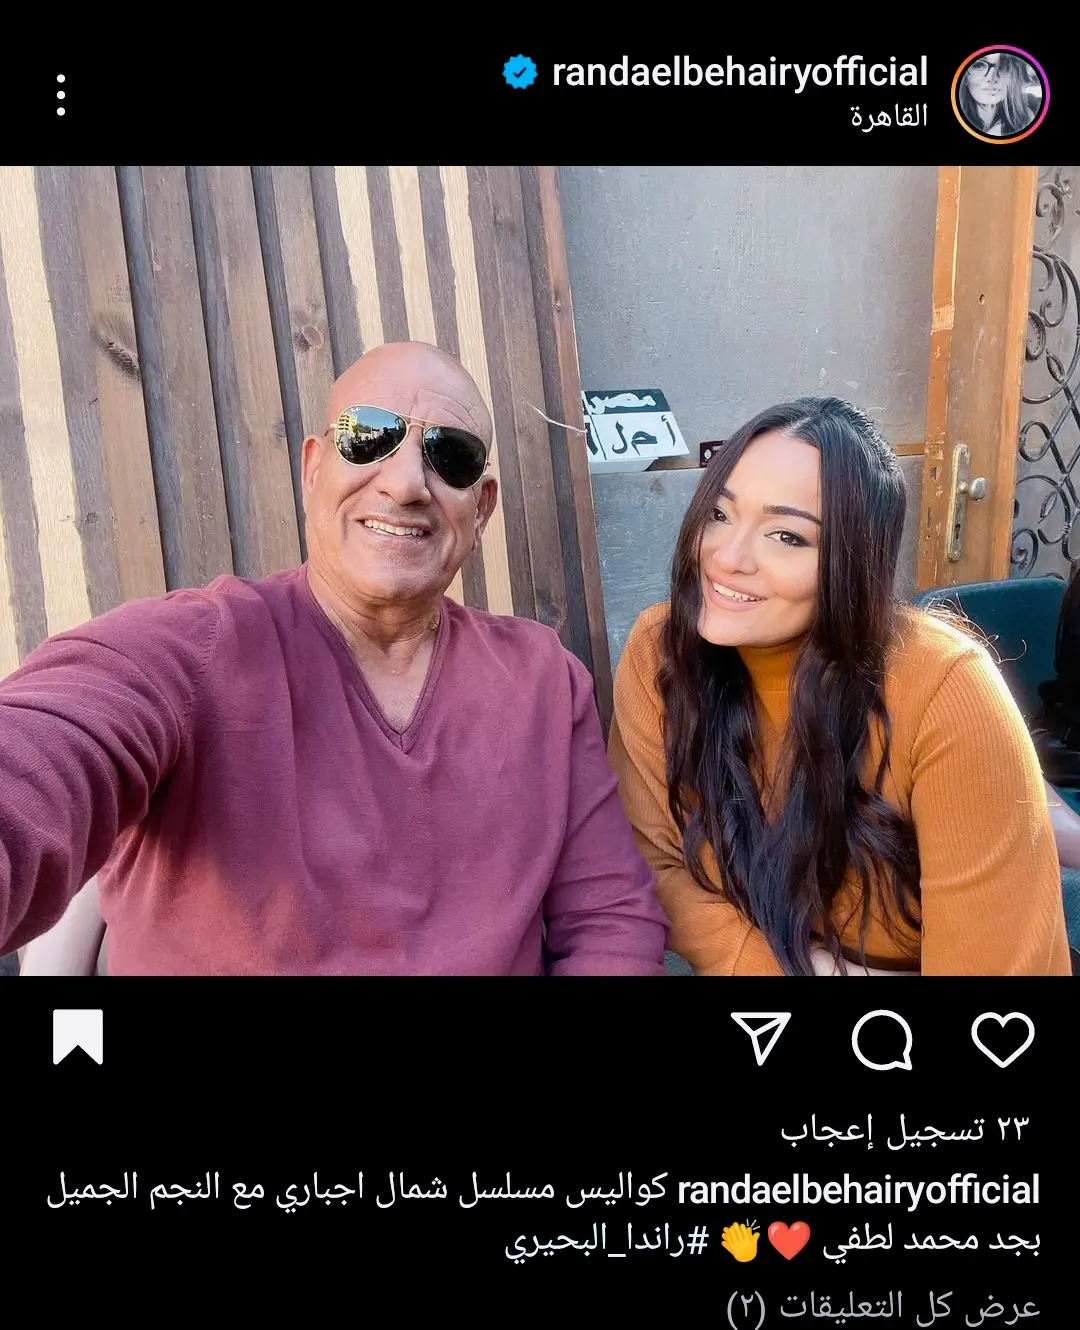 راندا البحيري بصحبة محمد لطفي في كواليس مسلسل "شمال إجباري"